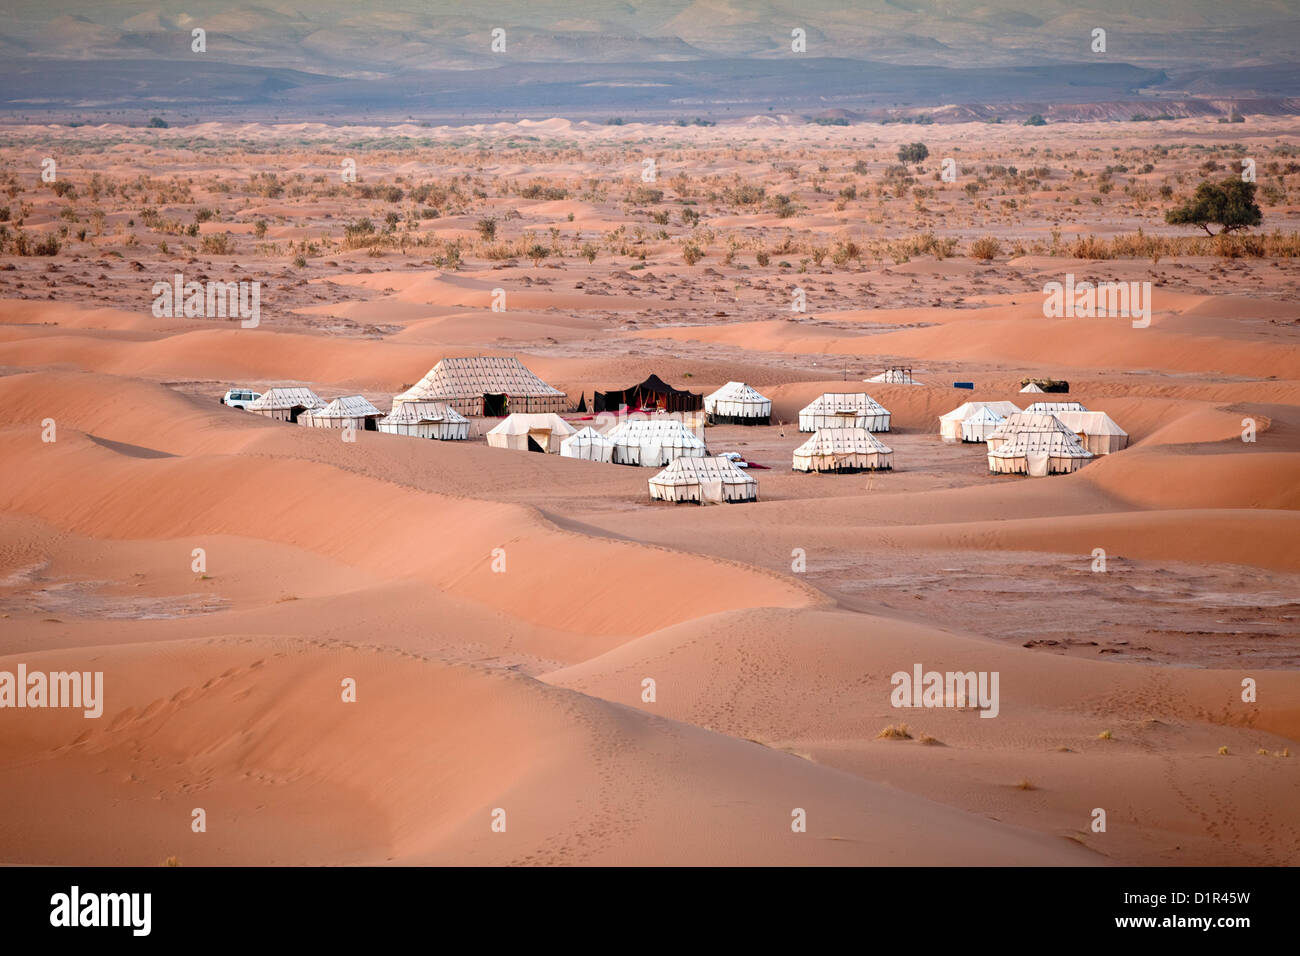 Marruecos, M'Hamid, Erg Chigaga dunas de arena. El desierto del Sahara. Campamento turístico, vivaque. Foto de stock